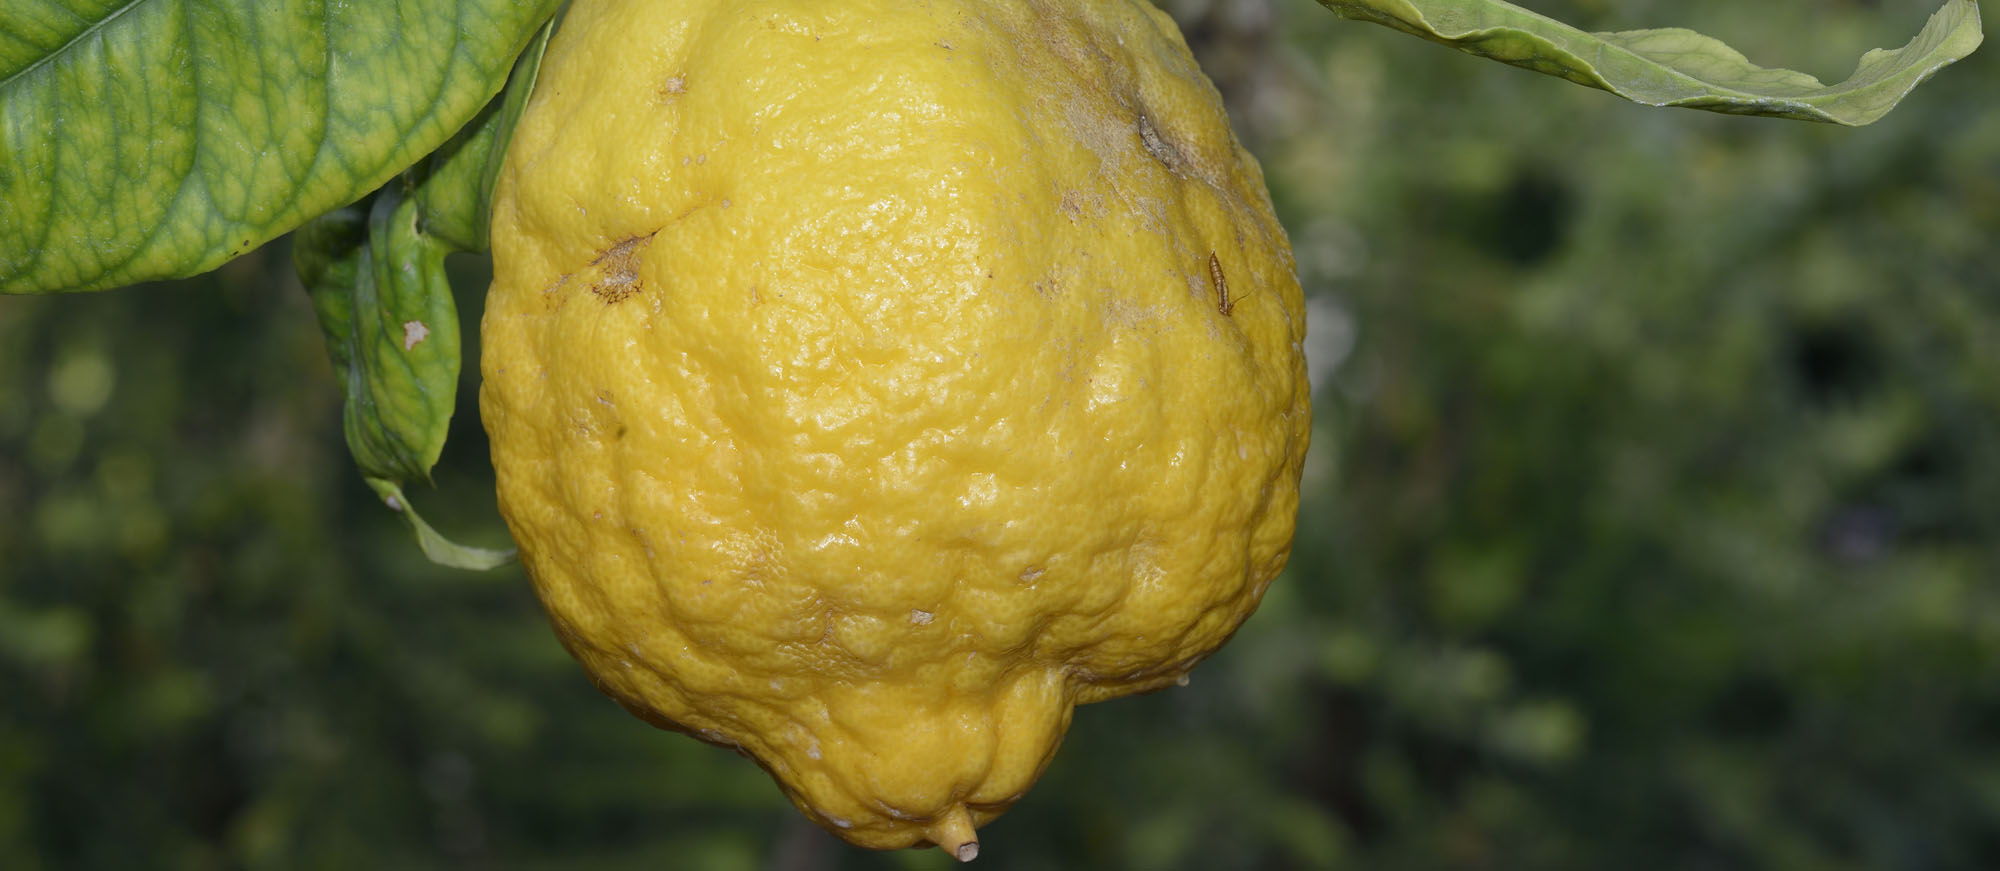 Le citron jaune de Menton ou d'ailleurs, la touche acidulée à vos